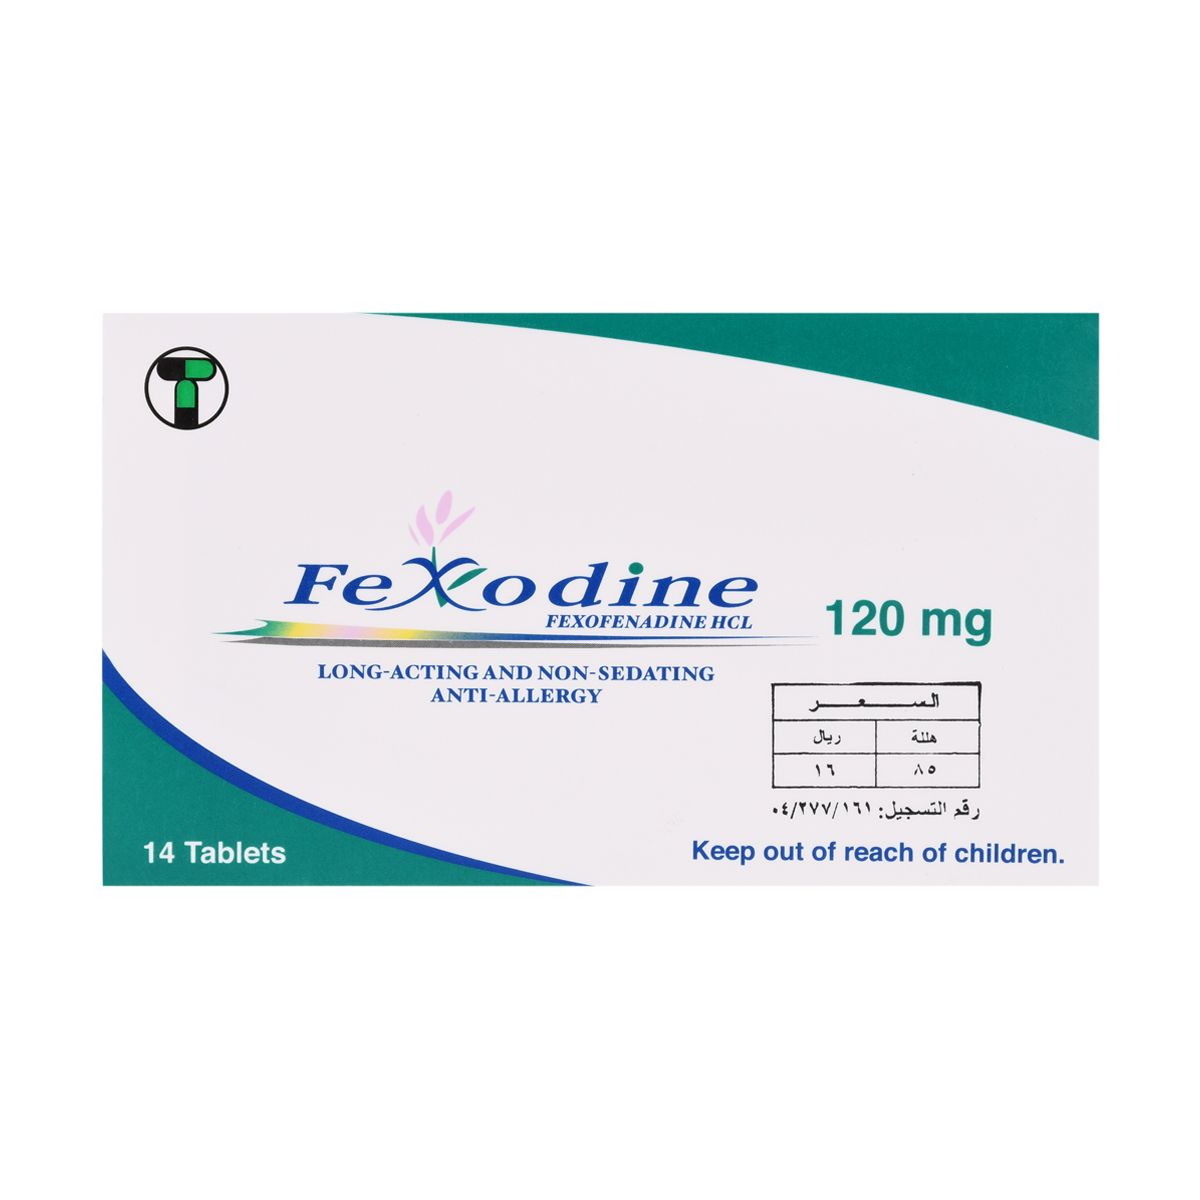 FEXODINE Fexodine 120mg 14 Tab